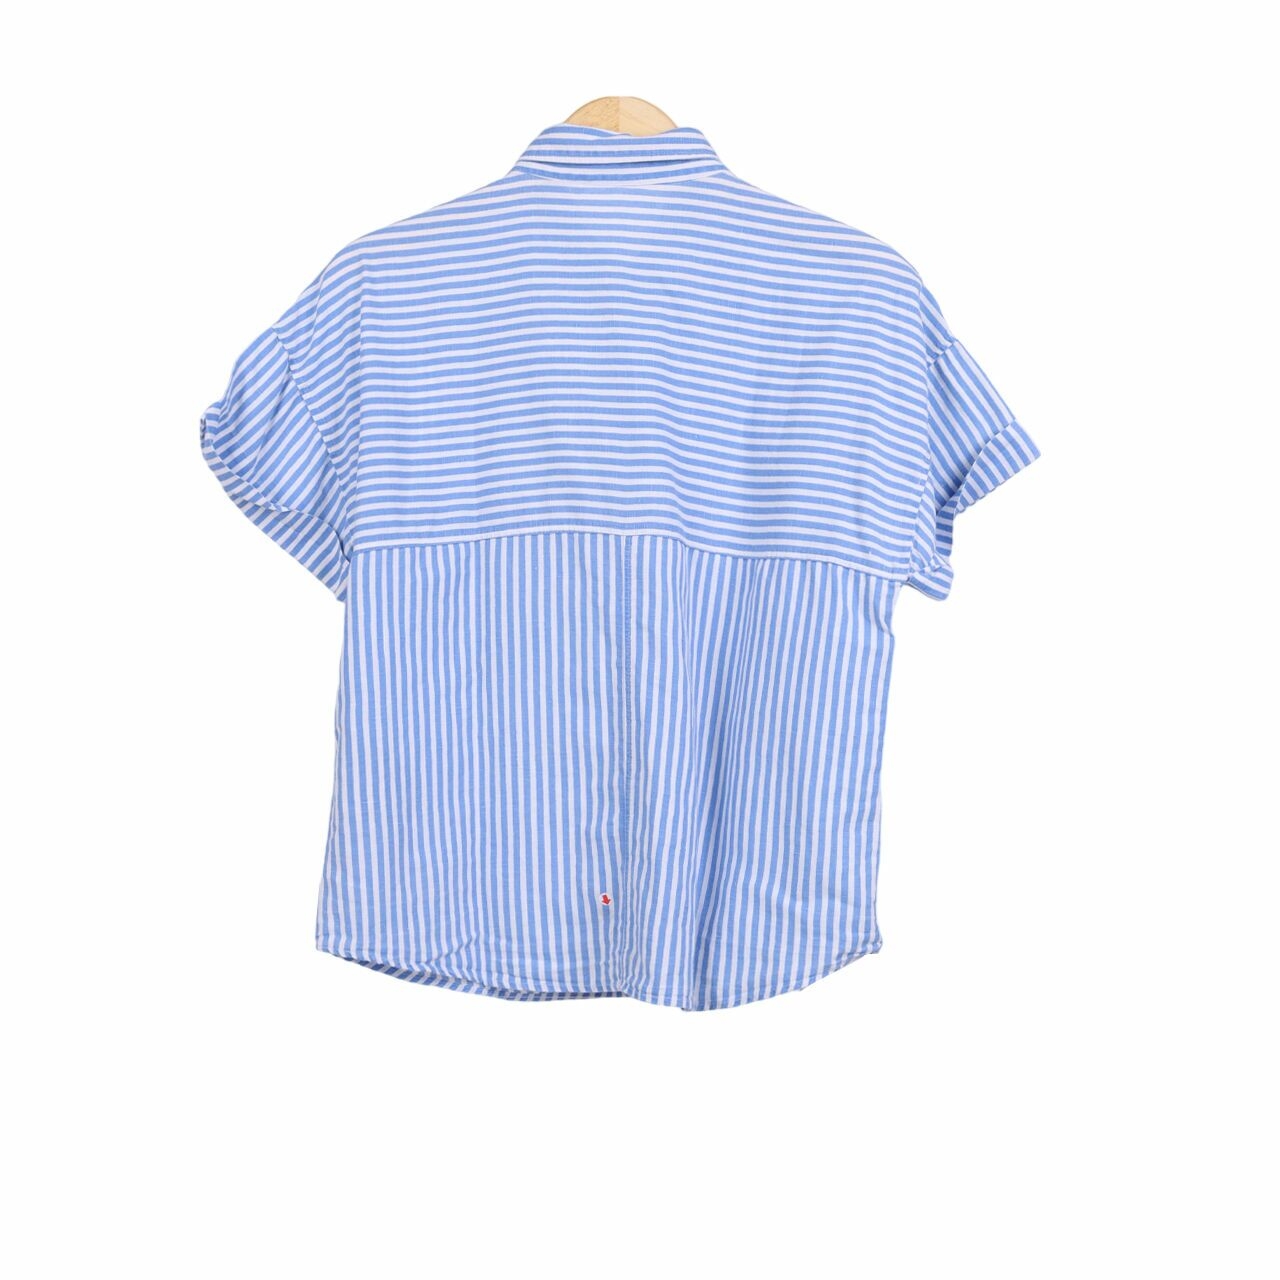 Zara Blue & White Stripes Shirt